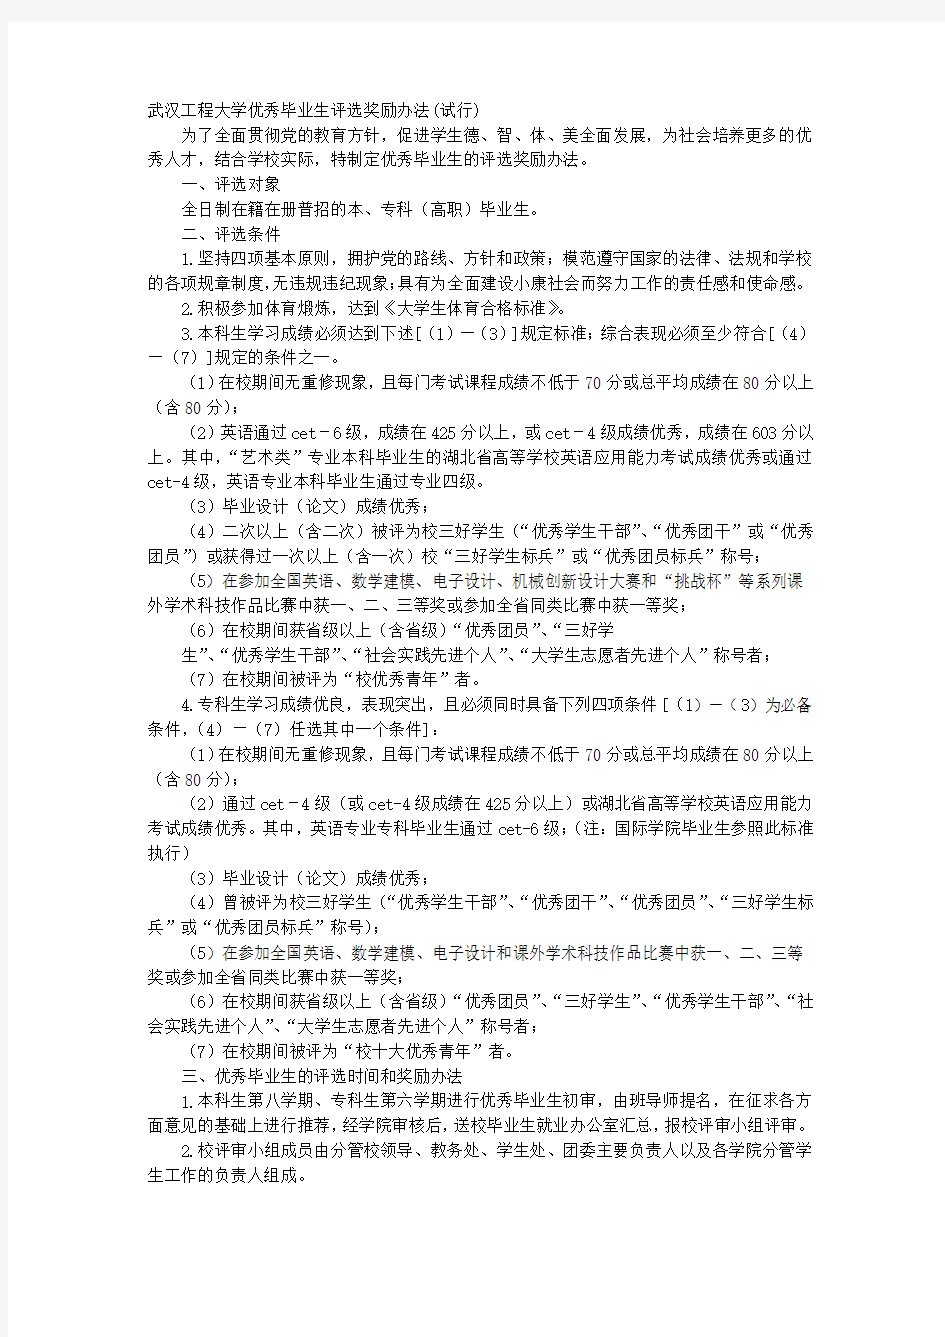 武汉工程大学计划财务处张永红